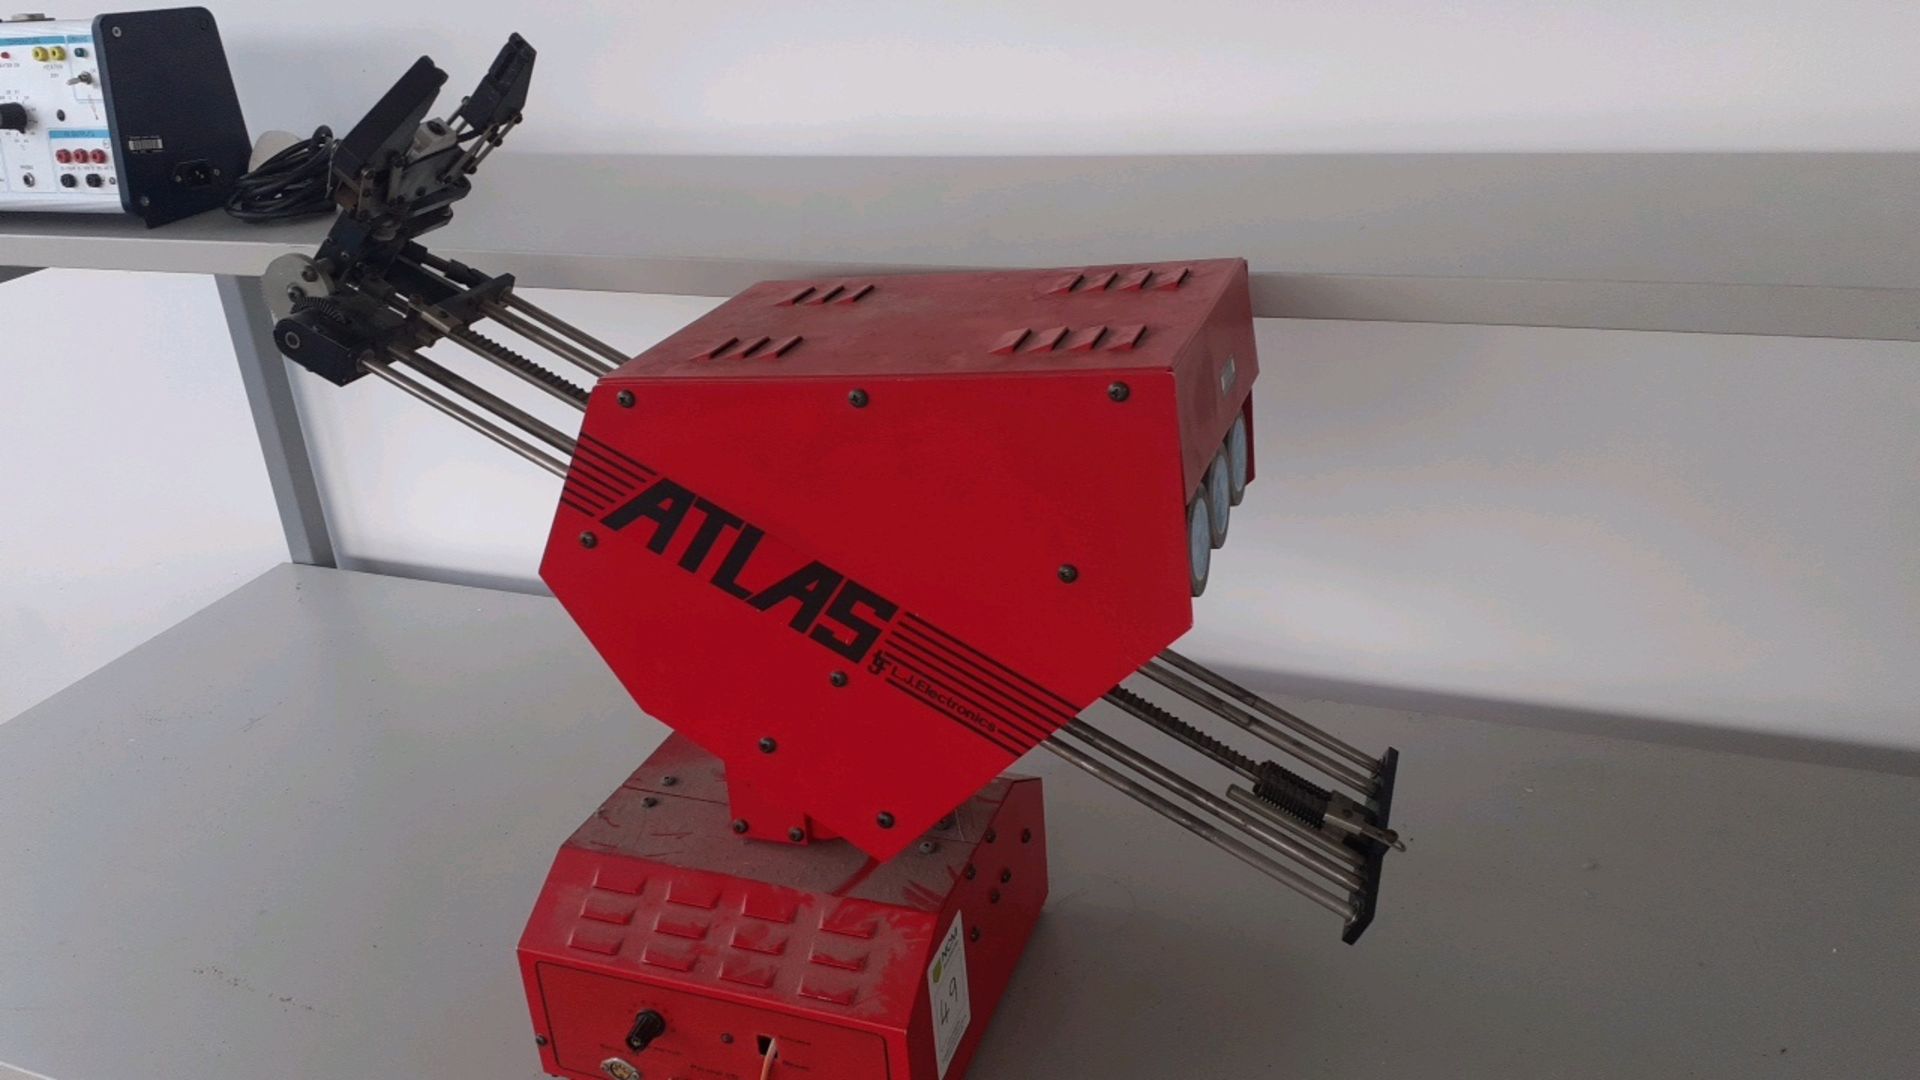 Atlas robot - Image 3 of 3